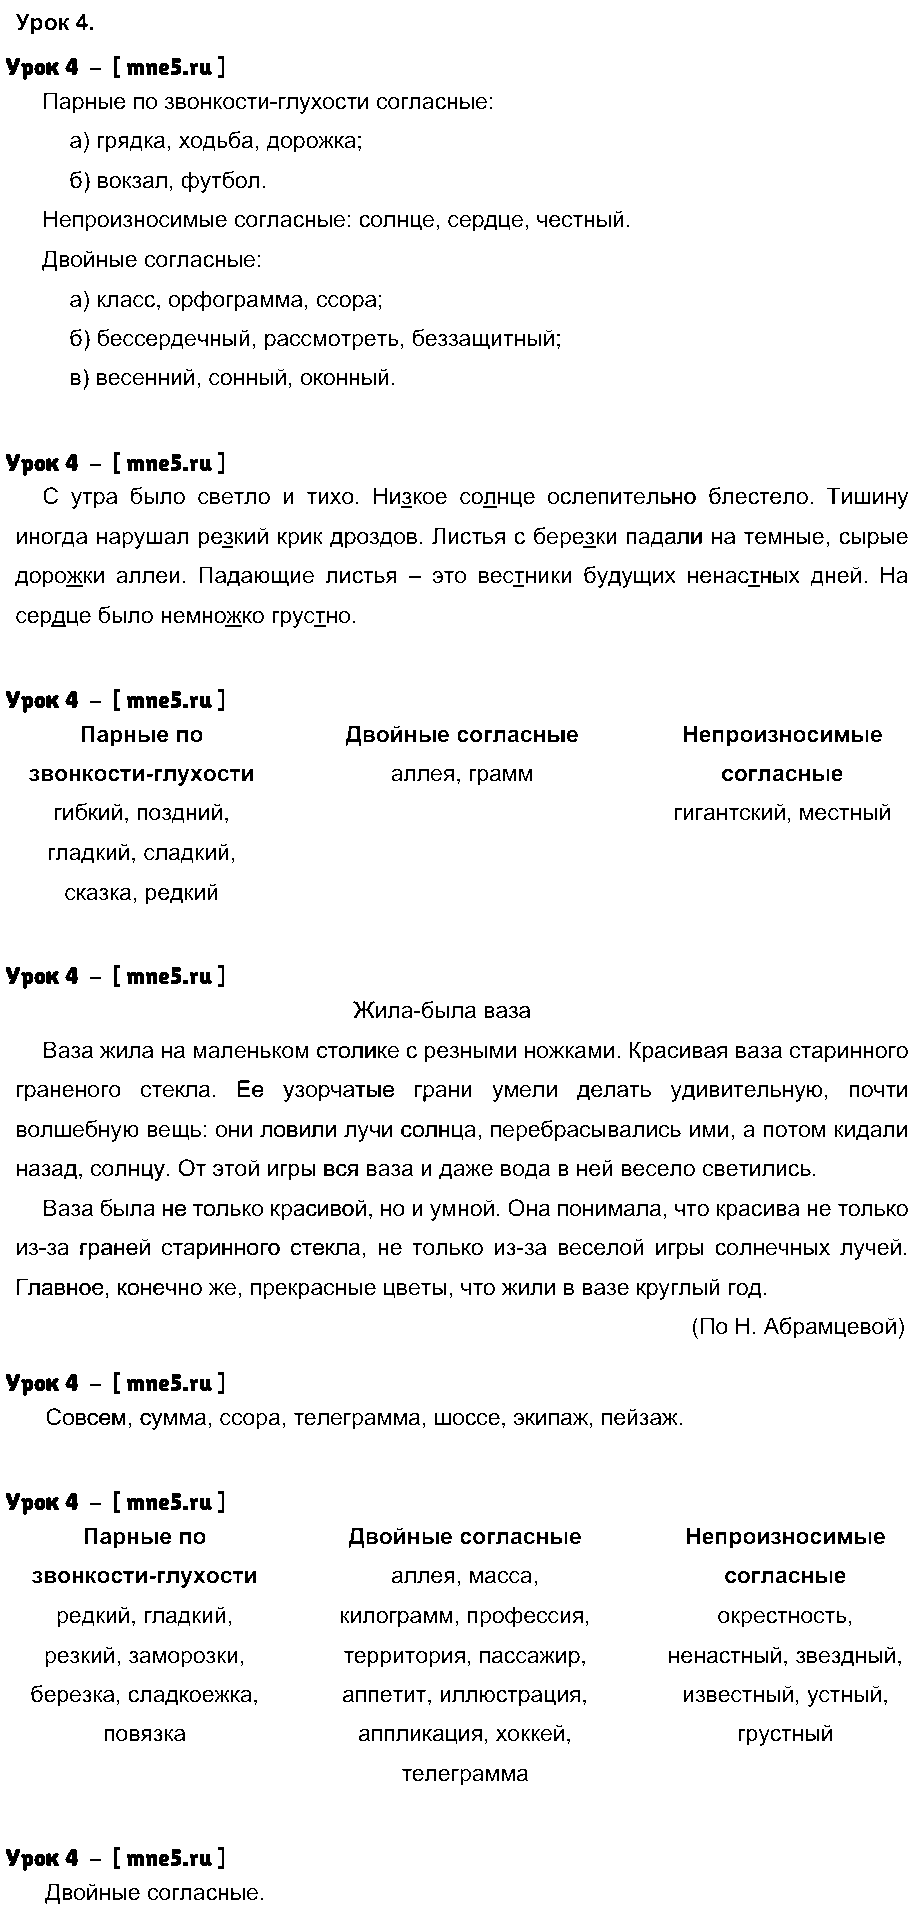 ГДЗ Русский язык 4 класс - Урок 4